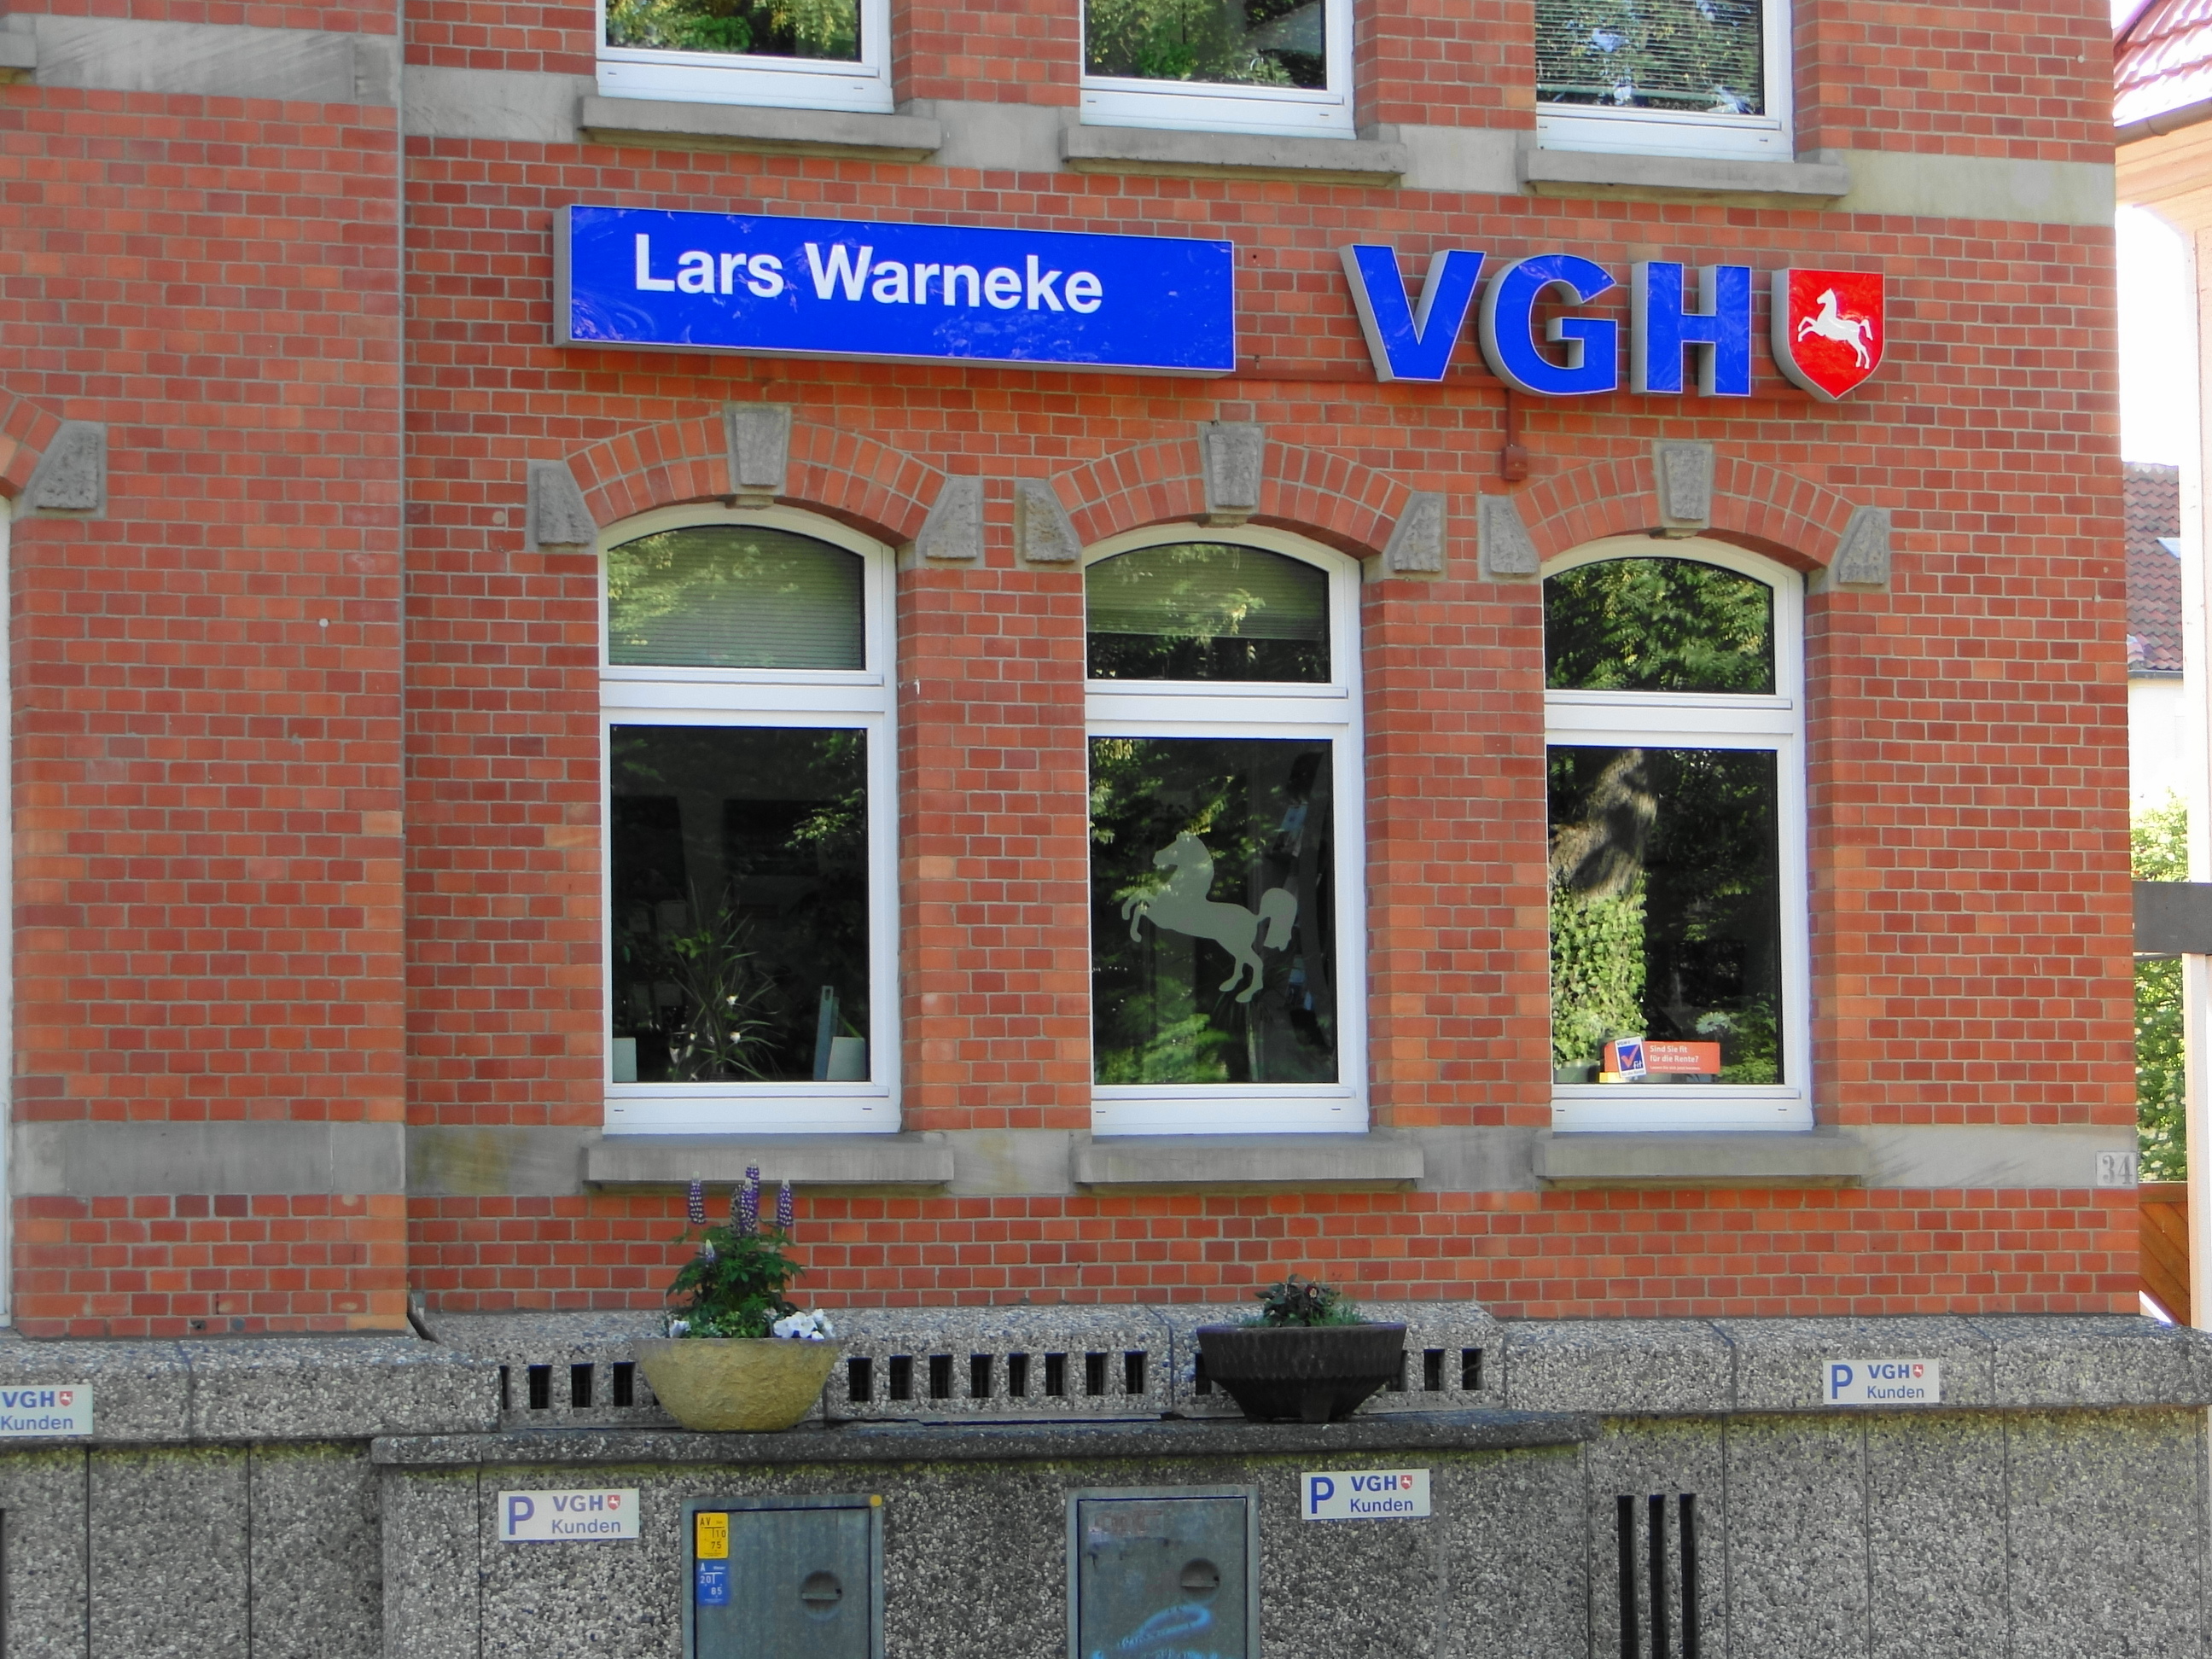 VGH Versicherungsbüro Lars Warneke in der Reinhäuser Landstr. 34